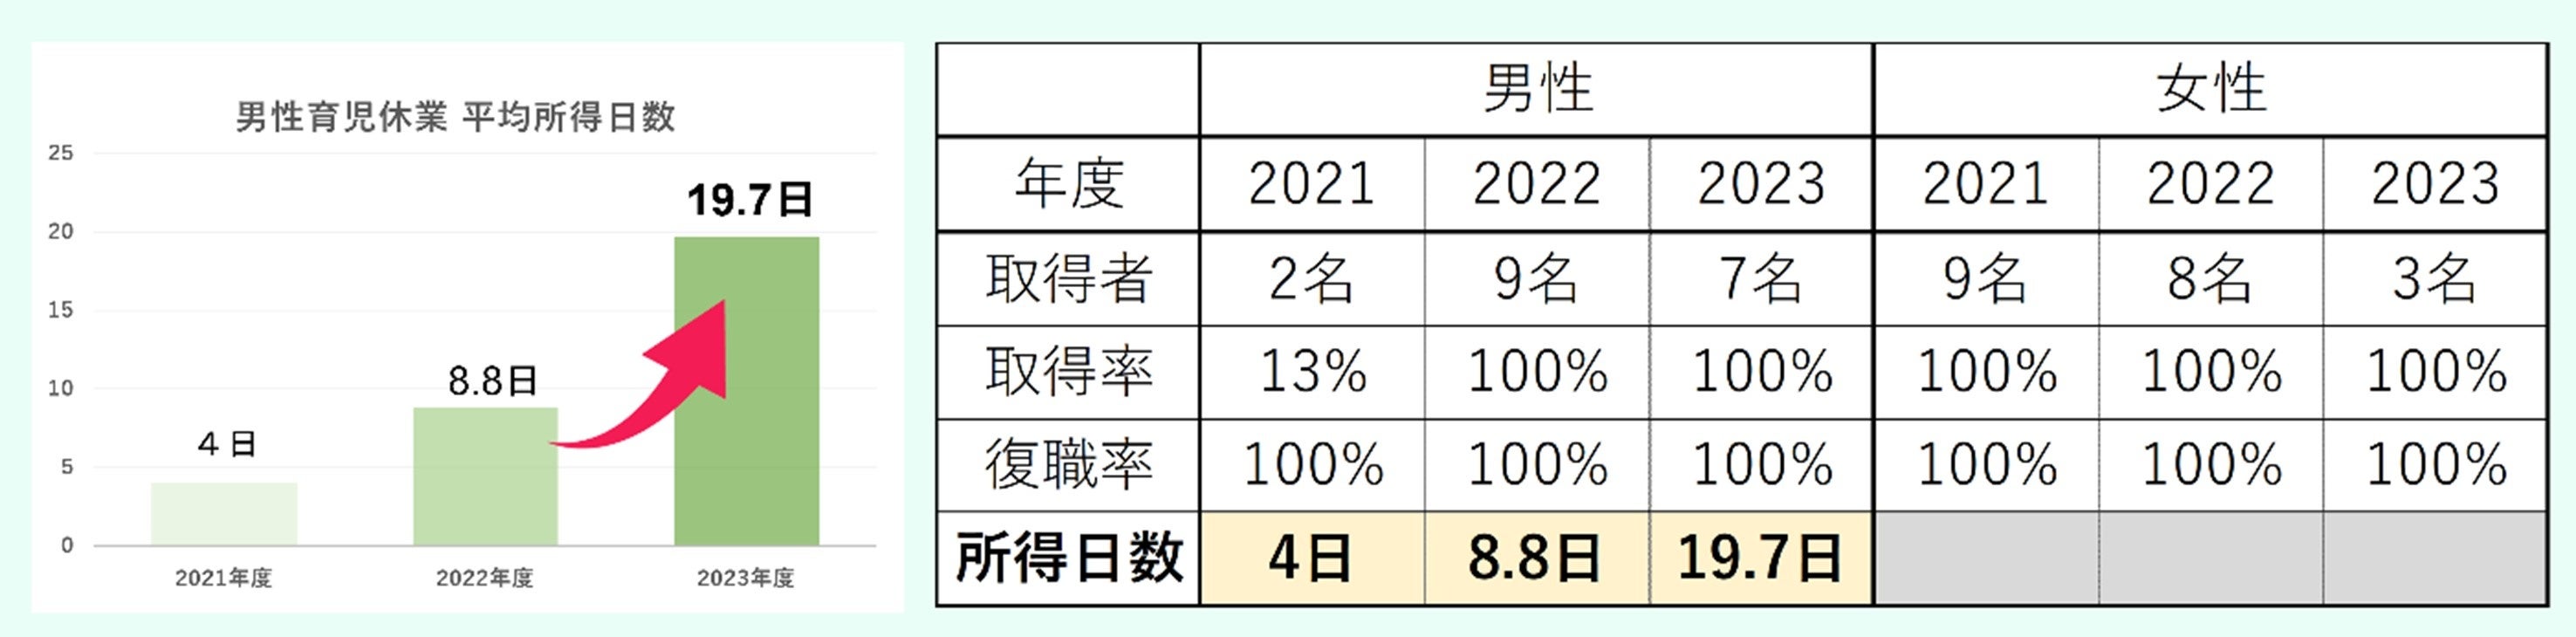 YOMIKO、 男性育休 取得率 100％を 2年連続で達成